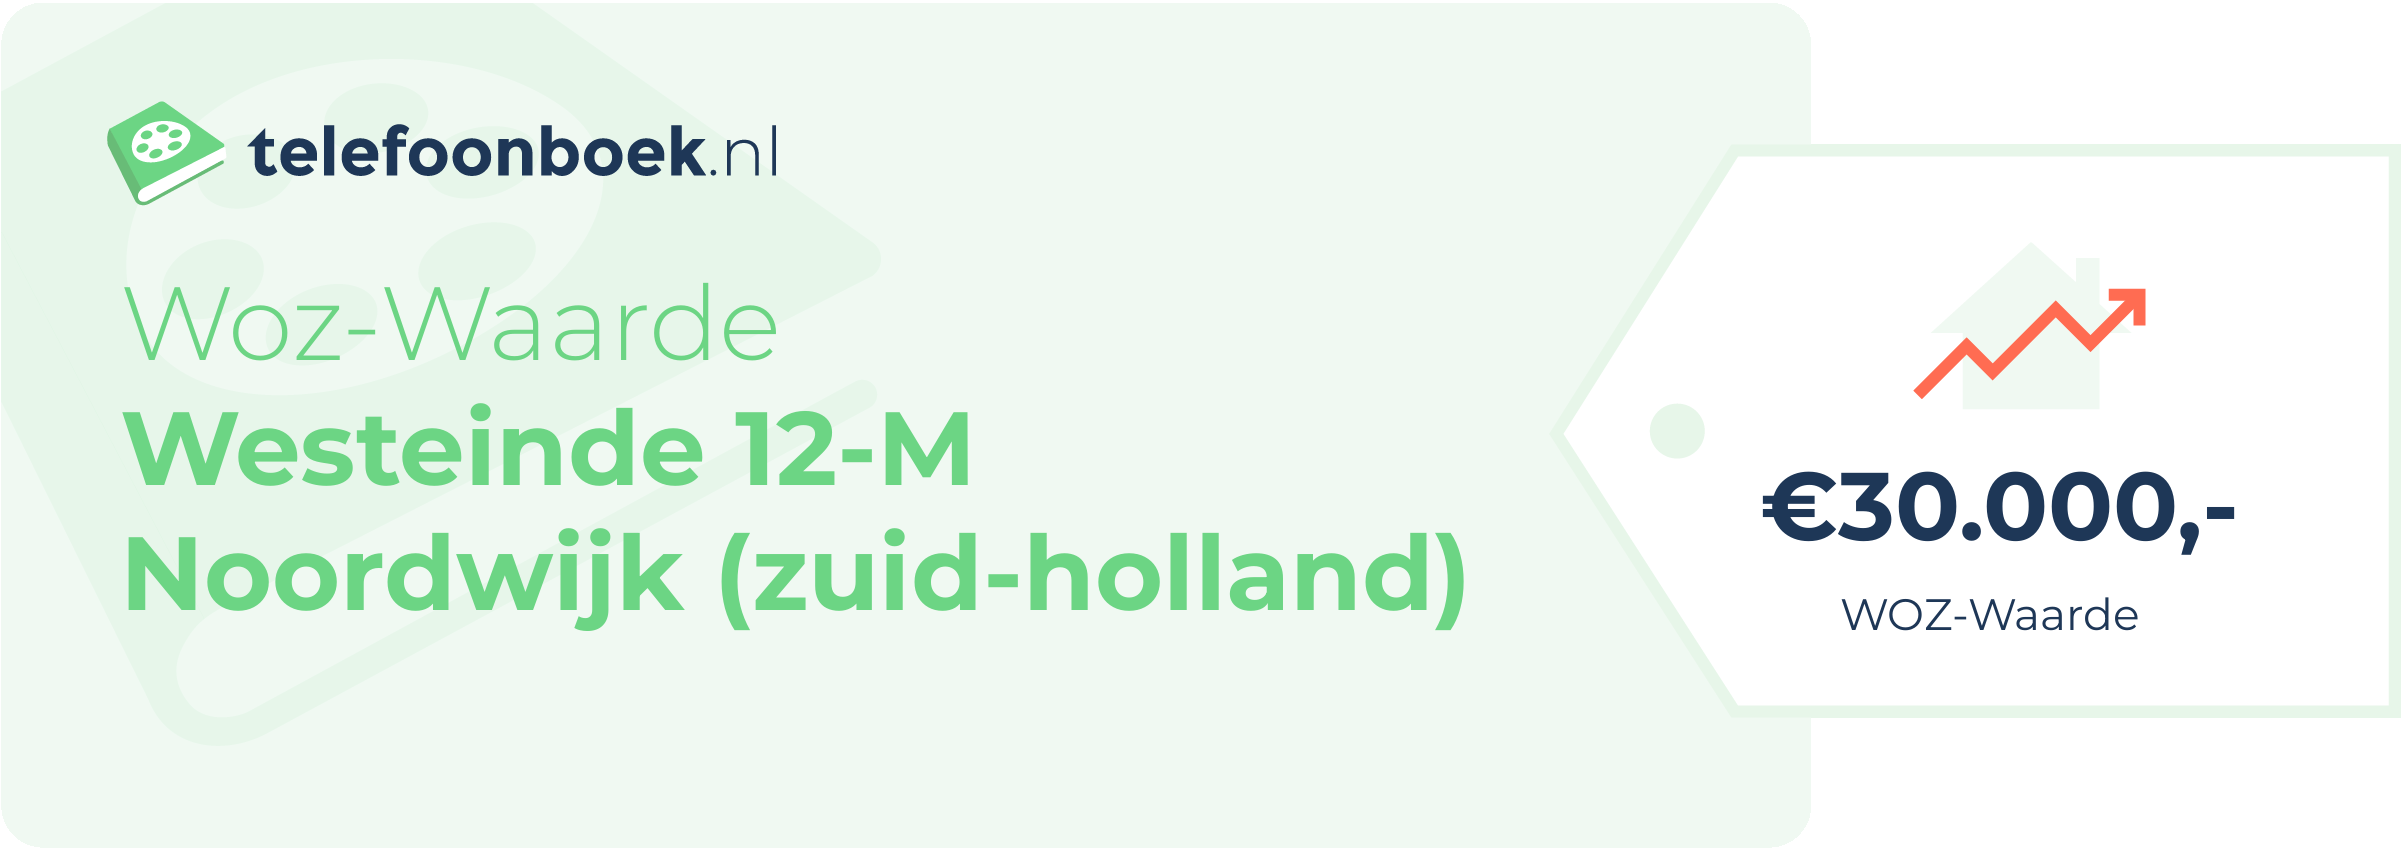 WOZ-waarde Westeinde 12-M Noordwijk (Zuid-Holland)